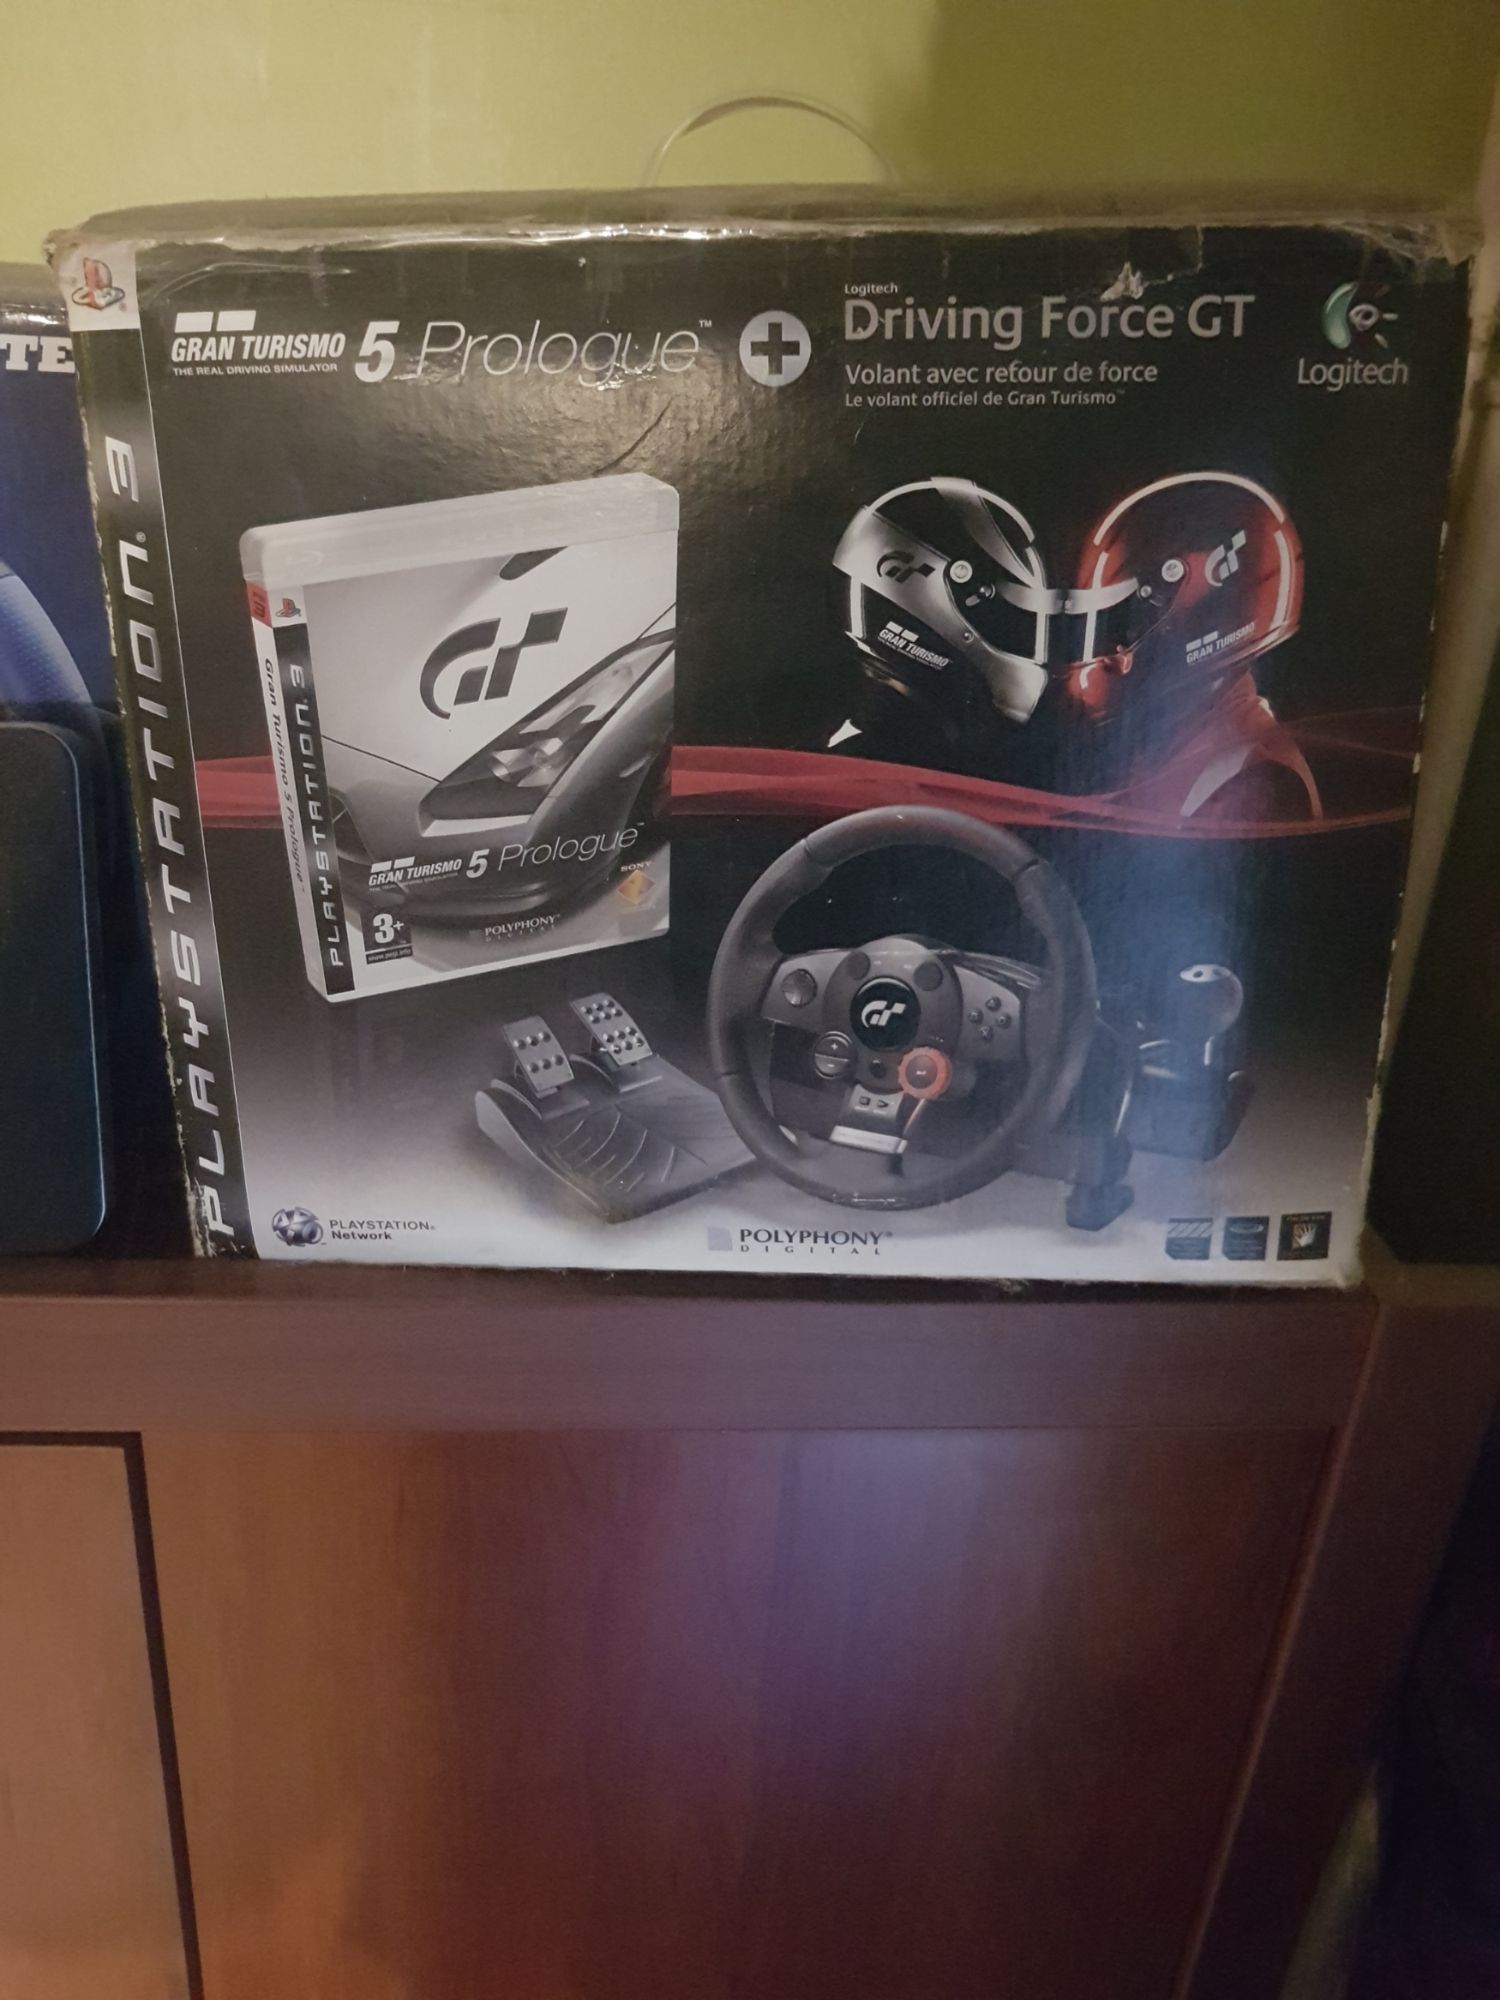 Gran Turismo 5 Prologue + Volant et pédalier